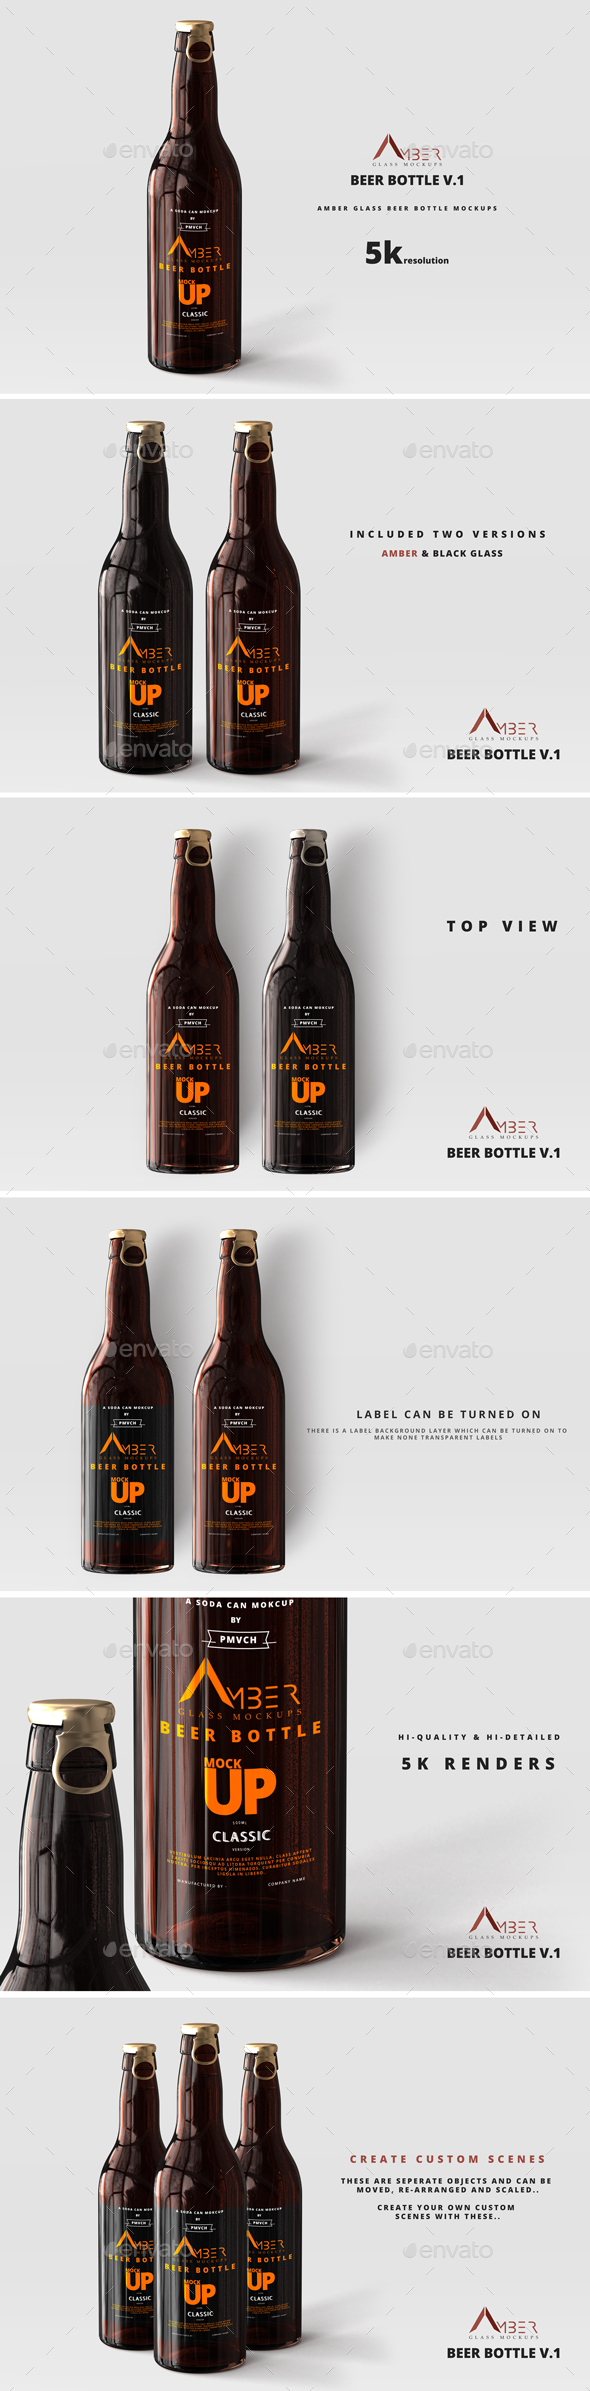 Download Amber Glass Beer Bottle Mockup 01 By Deltatemplates Graphicriver